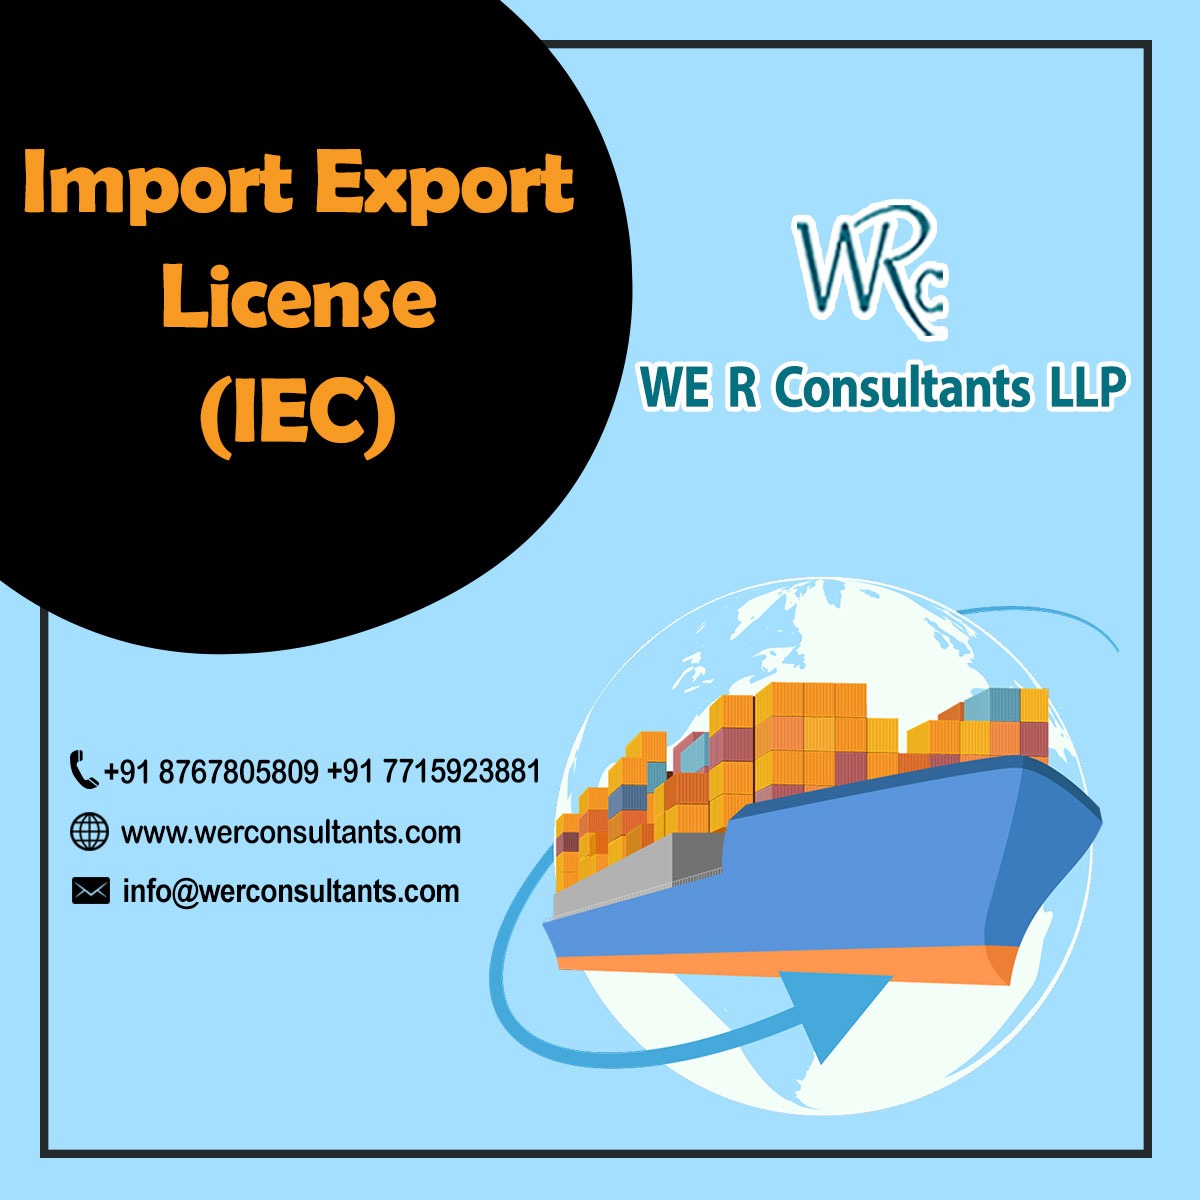 IEC (Import Export Code) License